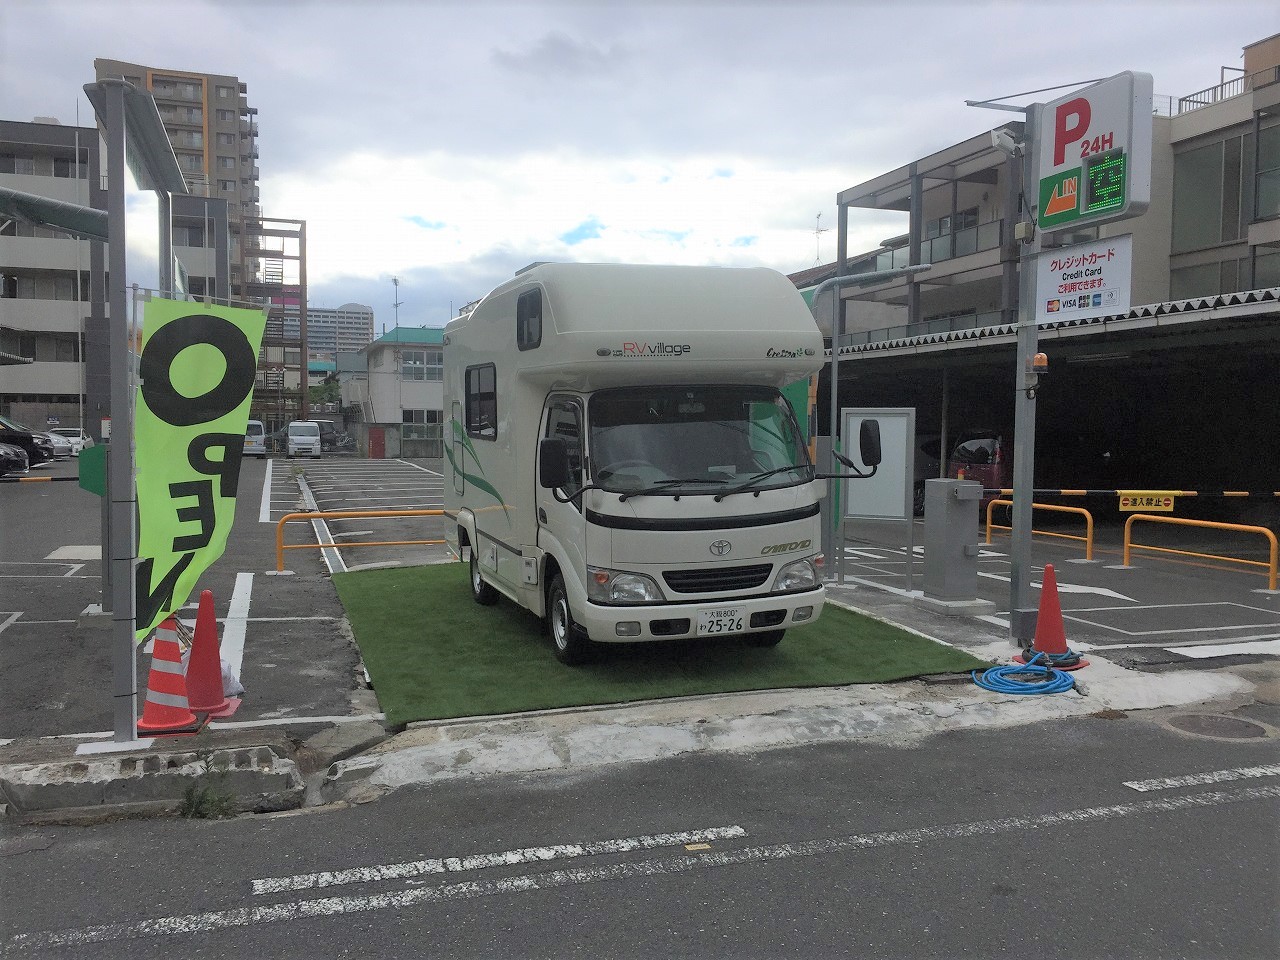 キャンピングカー向け車中泊用駐車場 Rv Station が東大阪市内にオープンしました Prでっせ